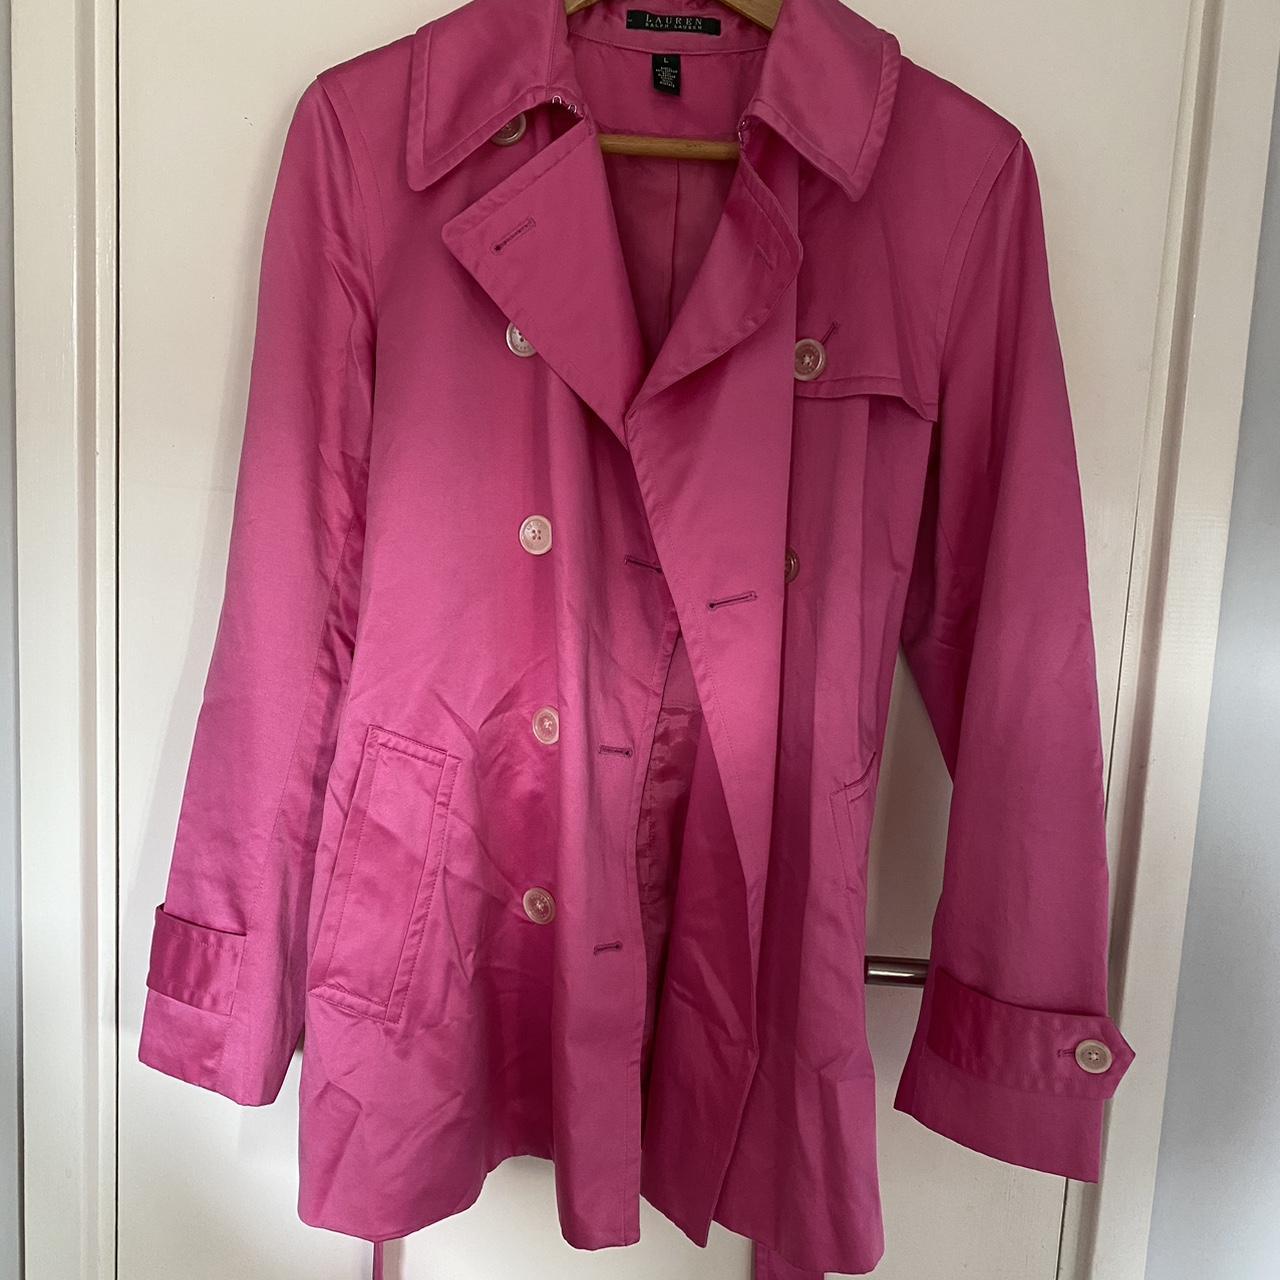 Ralph Lauren pink shirt trench coat style jacket.... - Depop